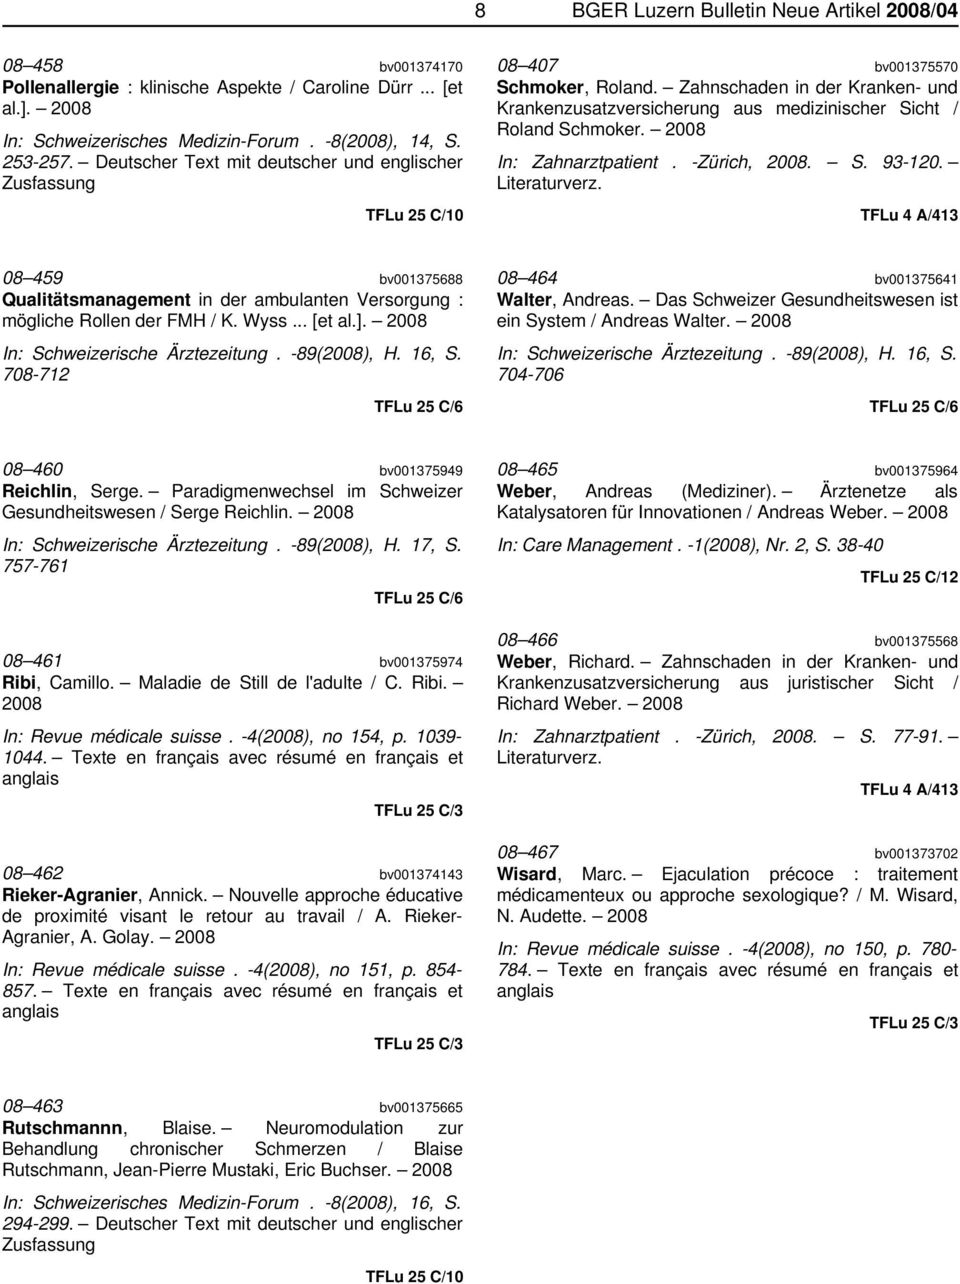 Zahnschaden in der Kranken- und Krankenzusatzversicherung aus medizinischer Sicht / Roland Schmoker. In: Zahnarztpatient. -Zürich,. S. 93-120. Literaturverz.